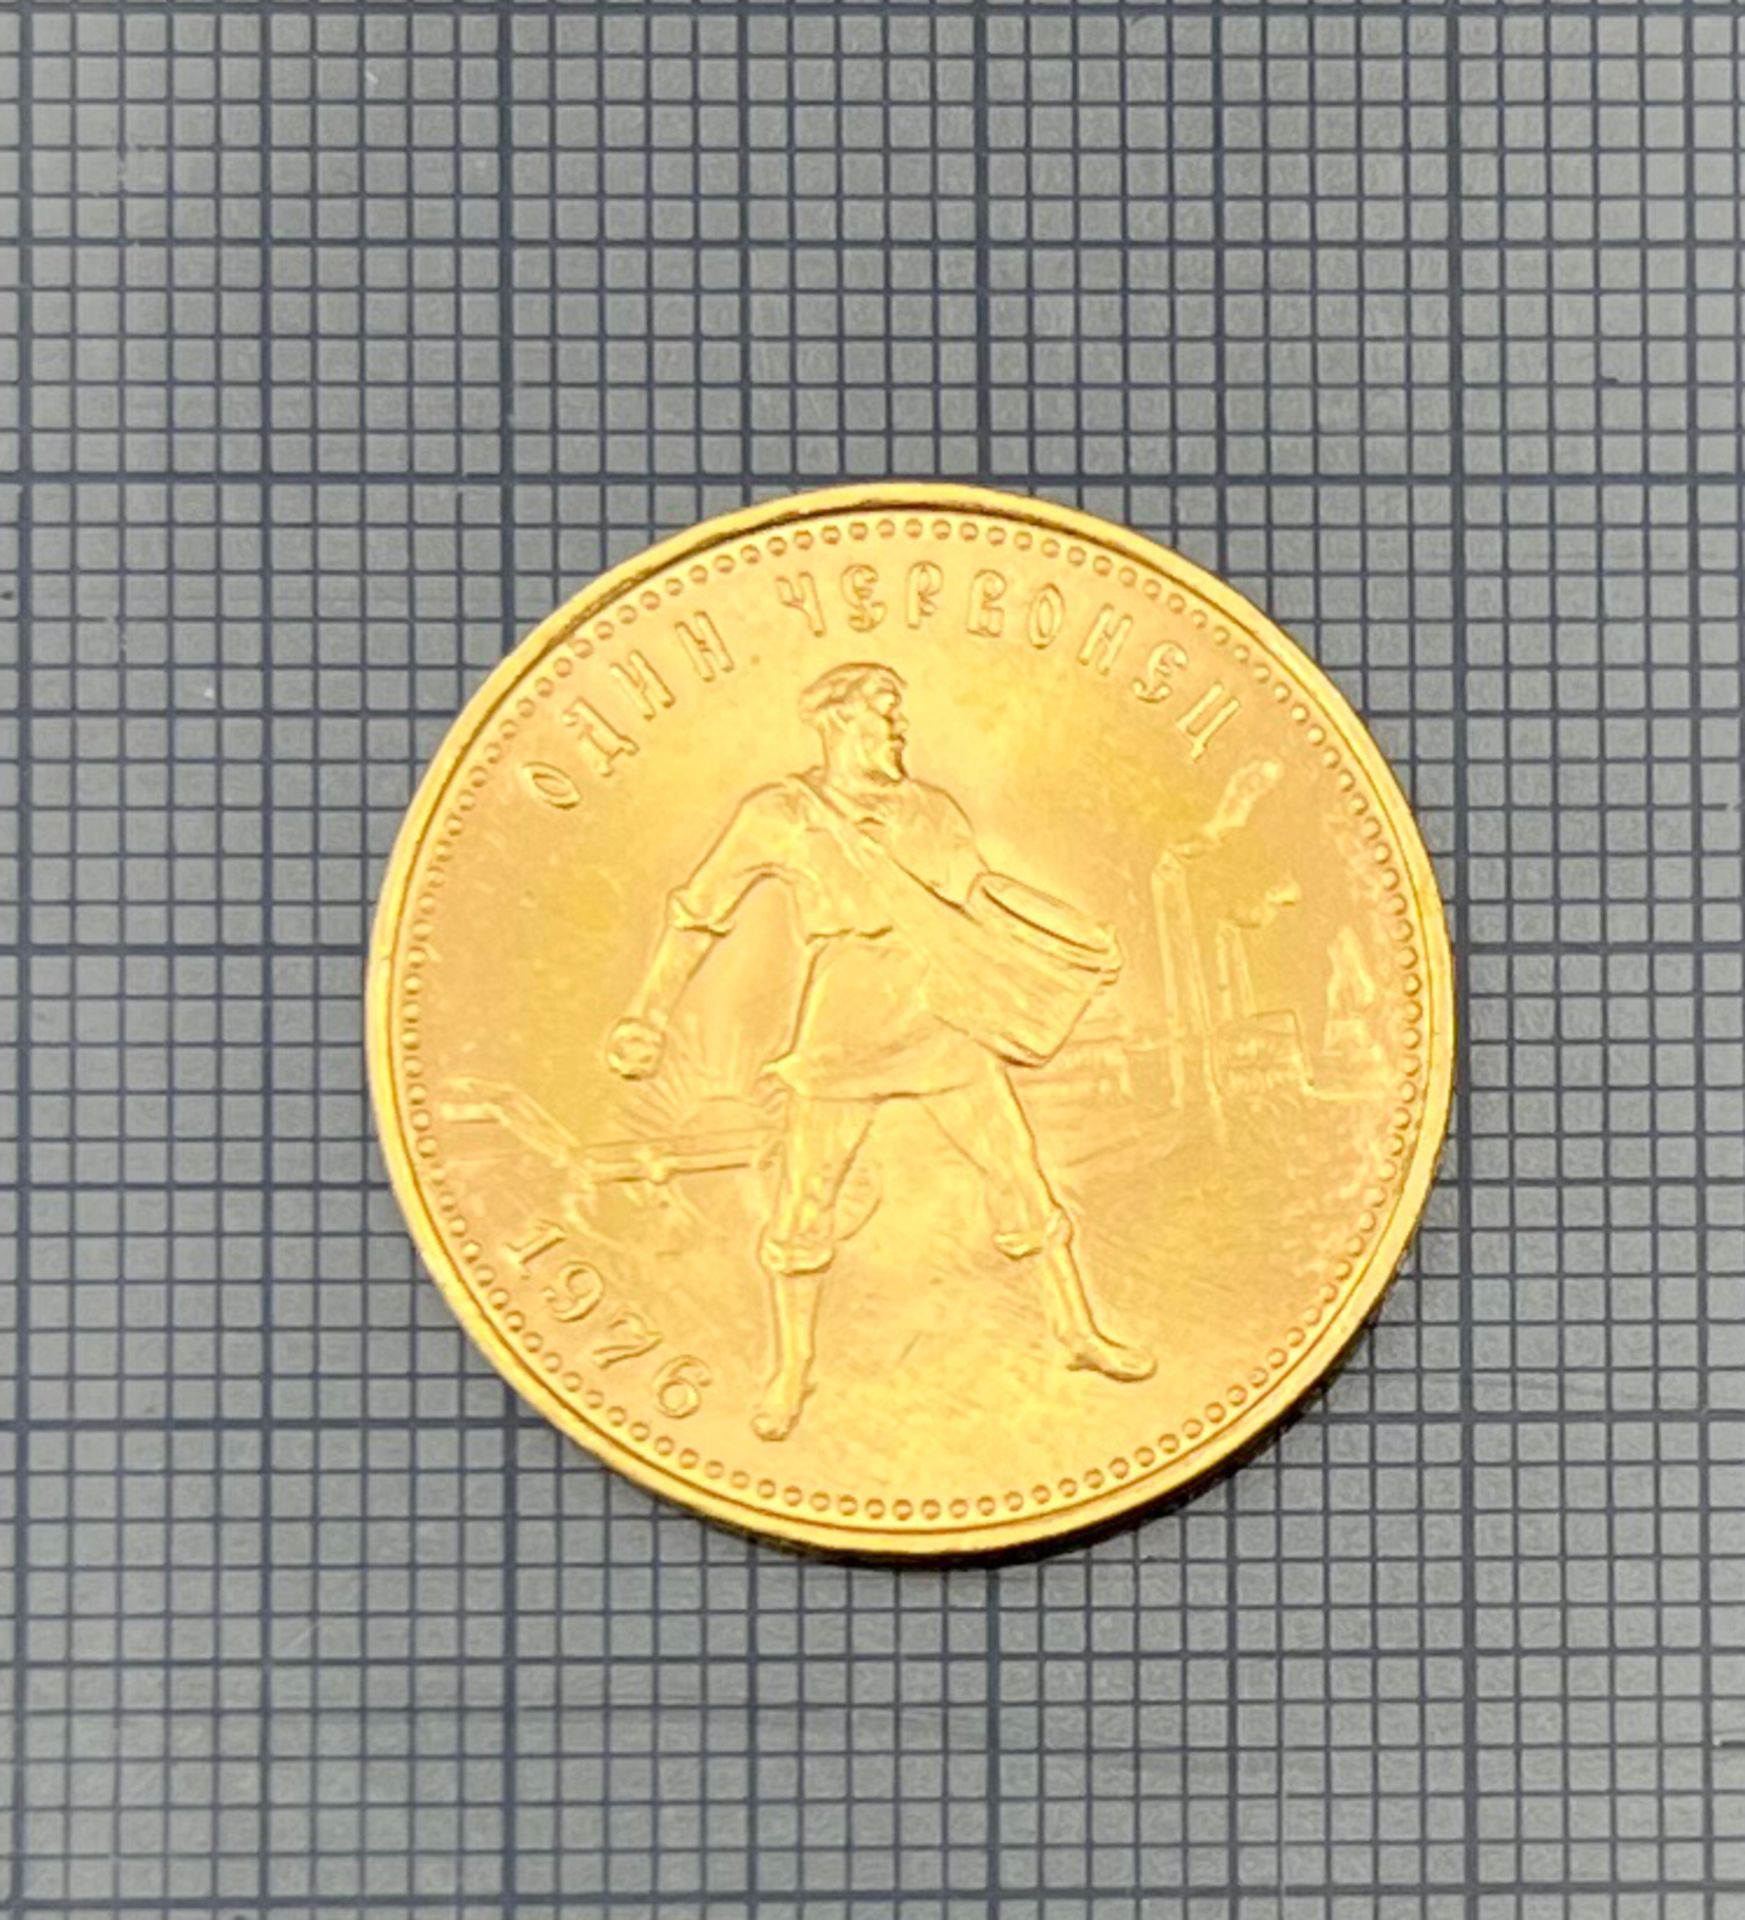 Goldmünze 1 Tscherwonetz. Sowjetunion 1976. 900 Gold. - Bild 3 aus 4